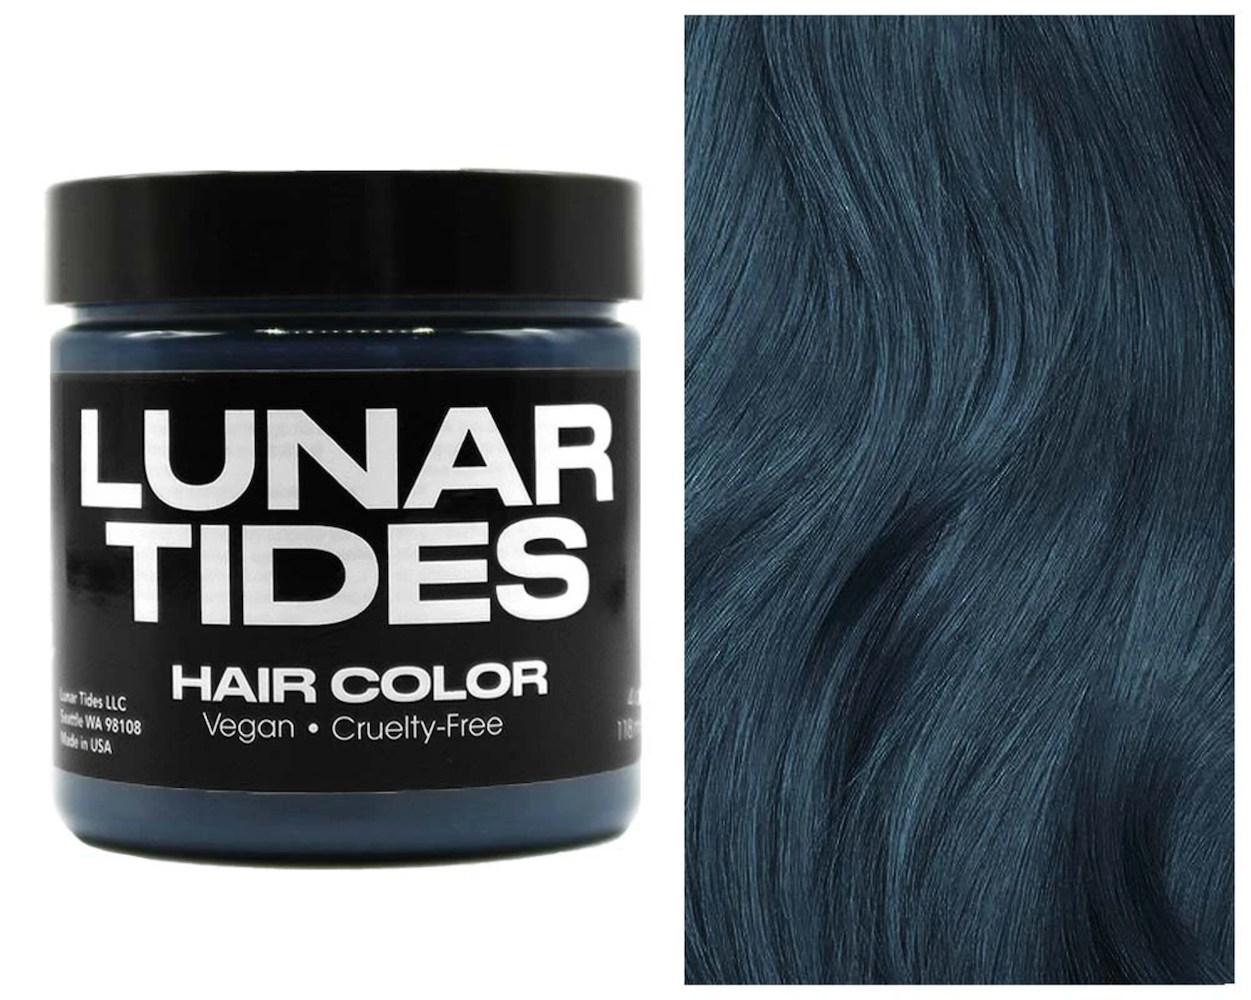 Lunar Tides Hair Dye - Smokey Teal